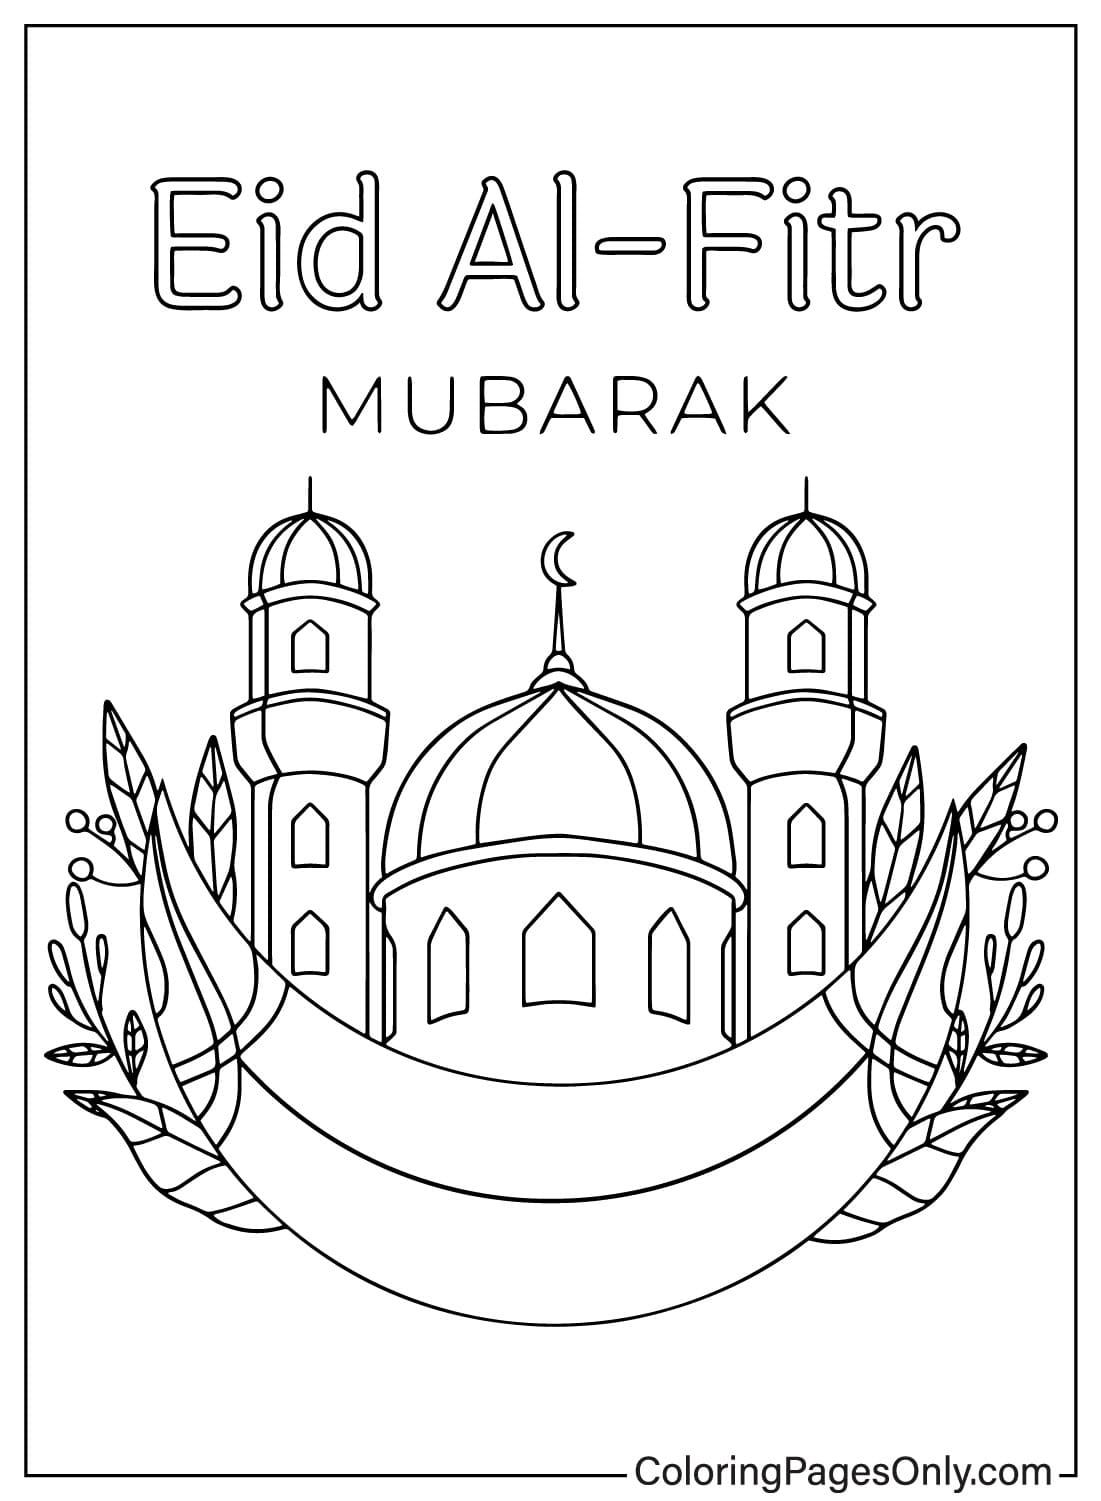 Eid Al-Fitr kleurenbladen van Eid Al-Fitr